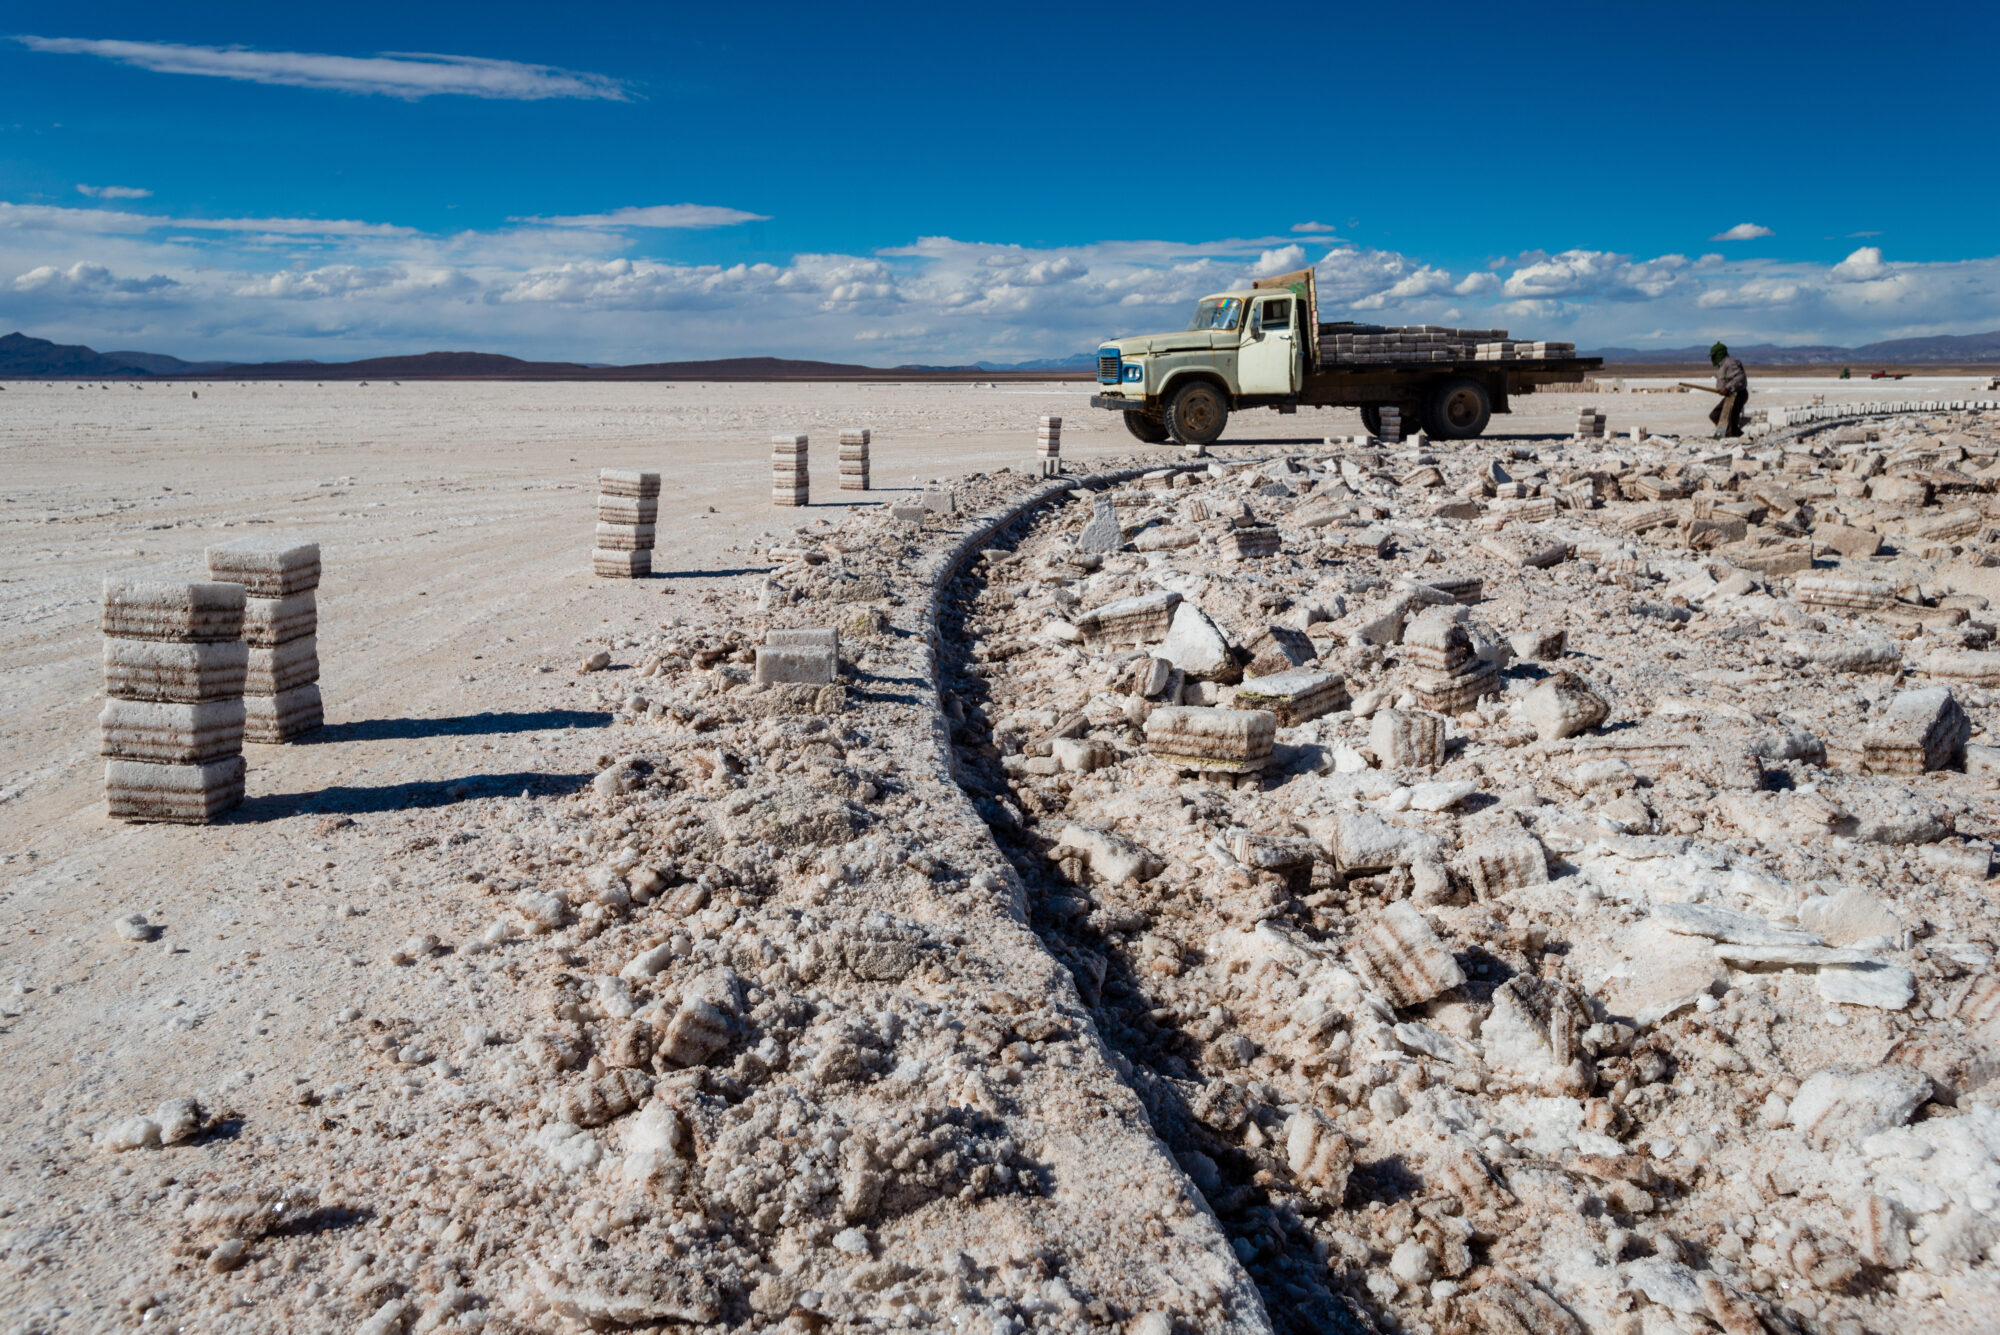 <p>La extracción de litio se lleva a cabo en el Salar de Uyuni, Bolivia. <span class="JLqJ4b ChMk0b" data-language-for-alternatives="es" data-language-to-translate-into="en" data-phrase-index="1">El salar es el salar más grande del mundo, con 4086 millas cuadradas (Imagen: Alamy)</span></p>